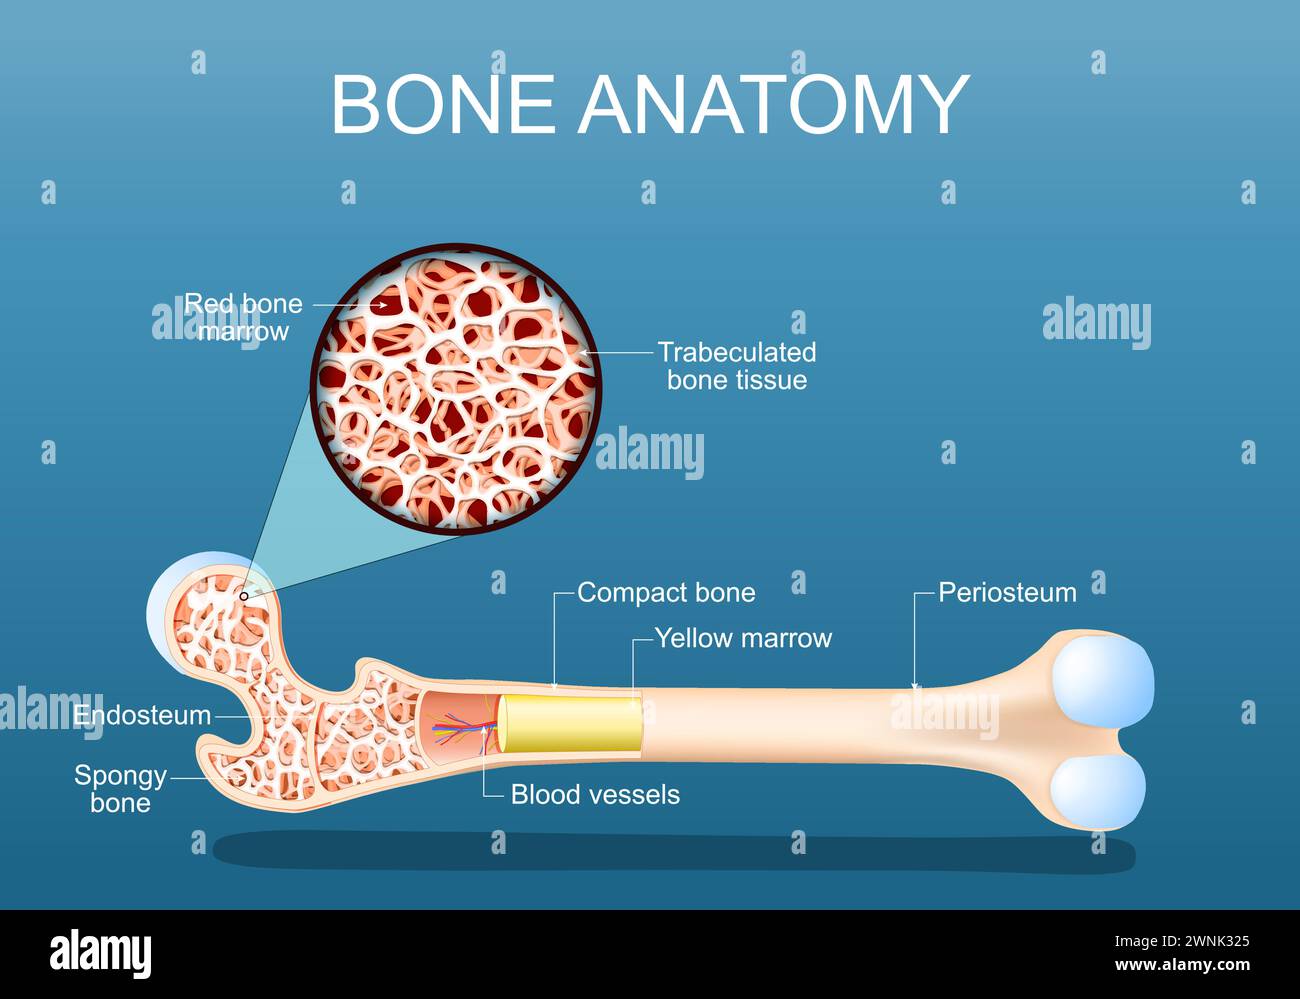 Anatomie osseuse. Structure d'un fémur. Gros plan d'une coupe transversale de tissu osseux spongieux Trabéculé avec moelle osseuse rouge. illustration vectorielle Illustration de Vecteur